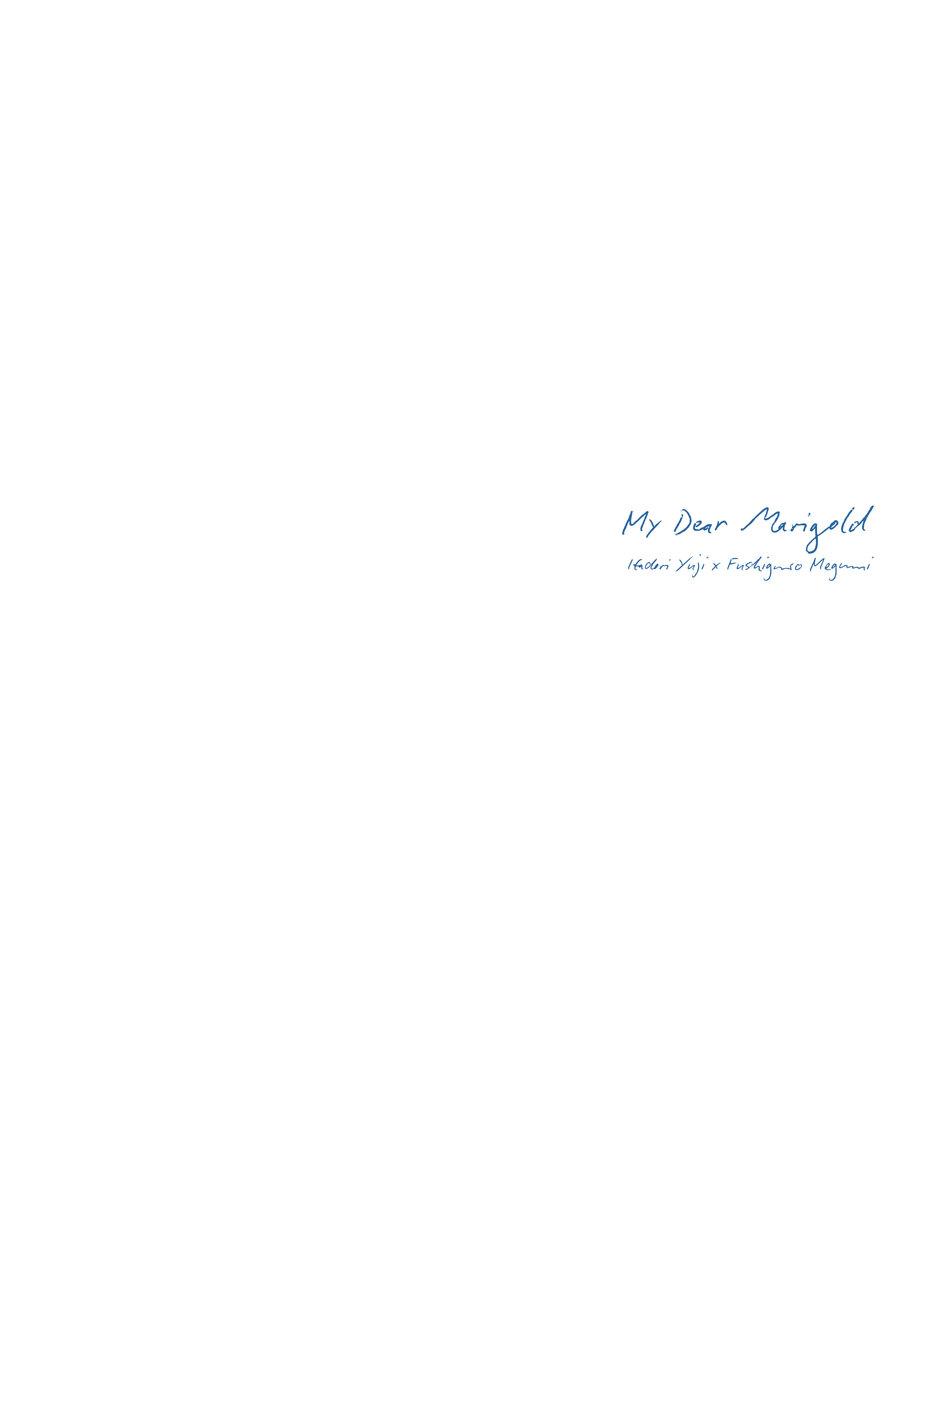 Marigold e | My Dear Marigold 41